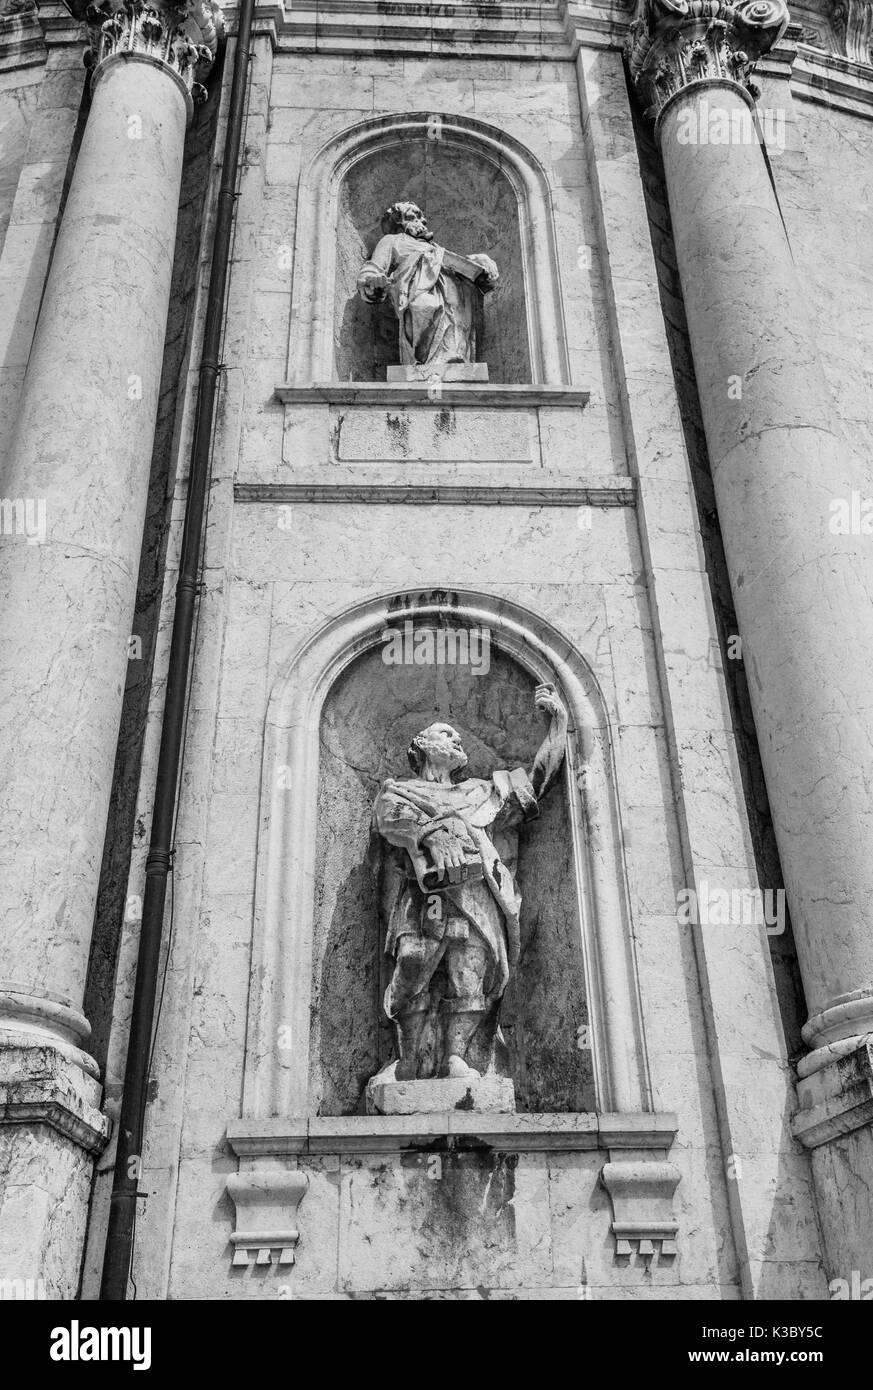 Germany, Bavaria, monastère bénédictin Ettal, des statues à la façade de l'église abbatiale Ettal Banque D'Images